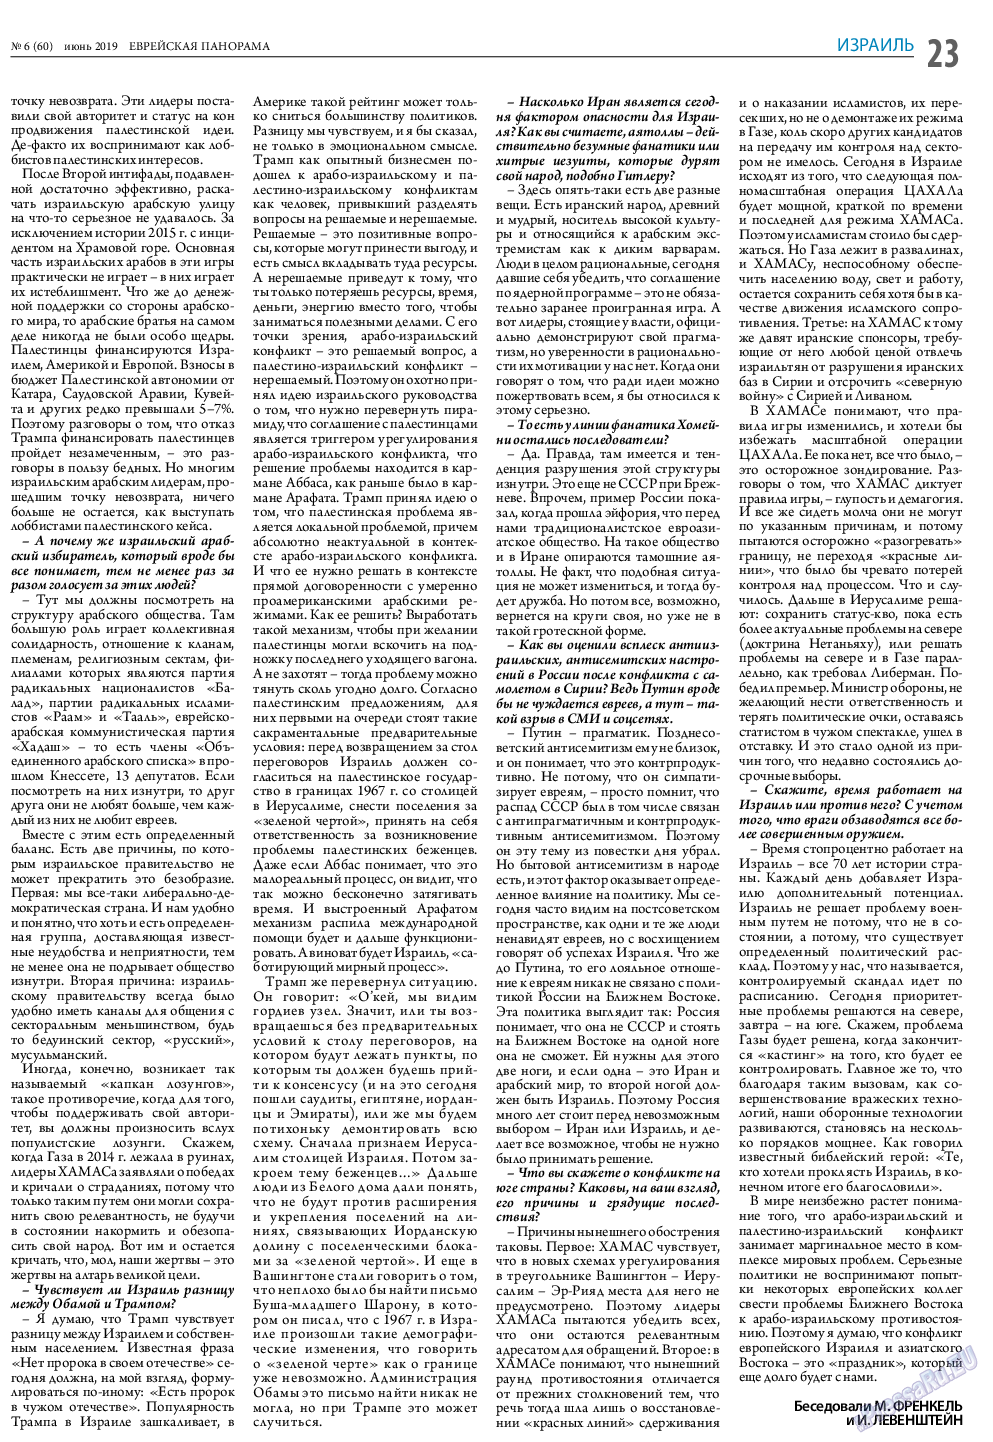 Еврейская панорама (газета). 2019 год, номер 6, стр. 23